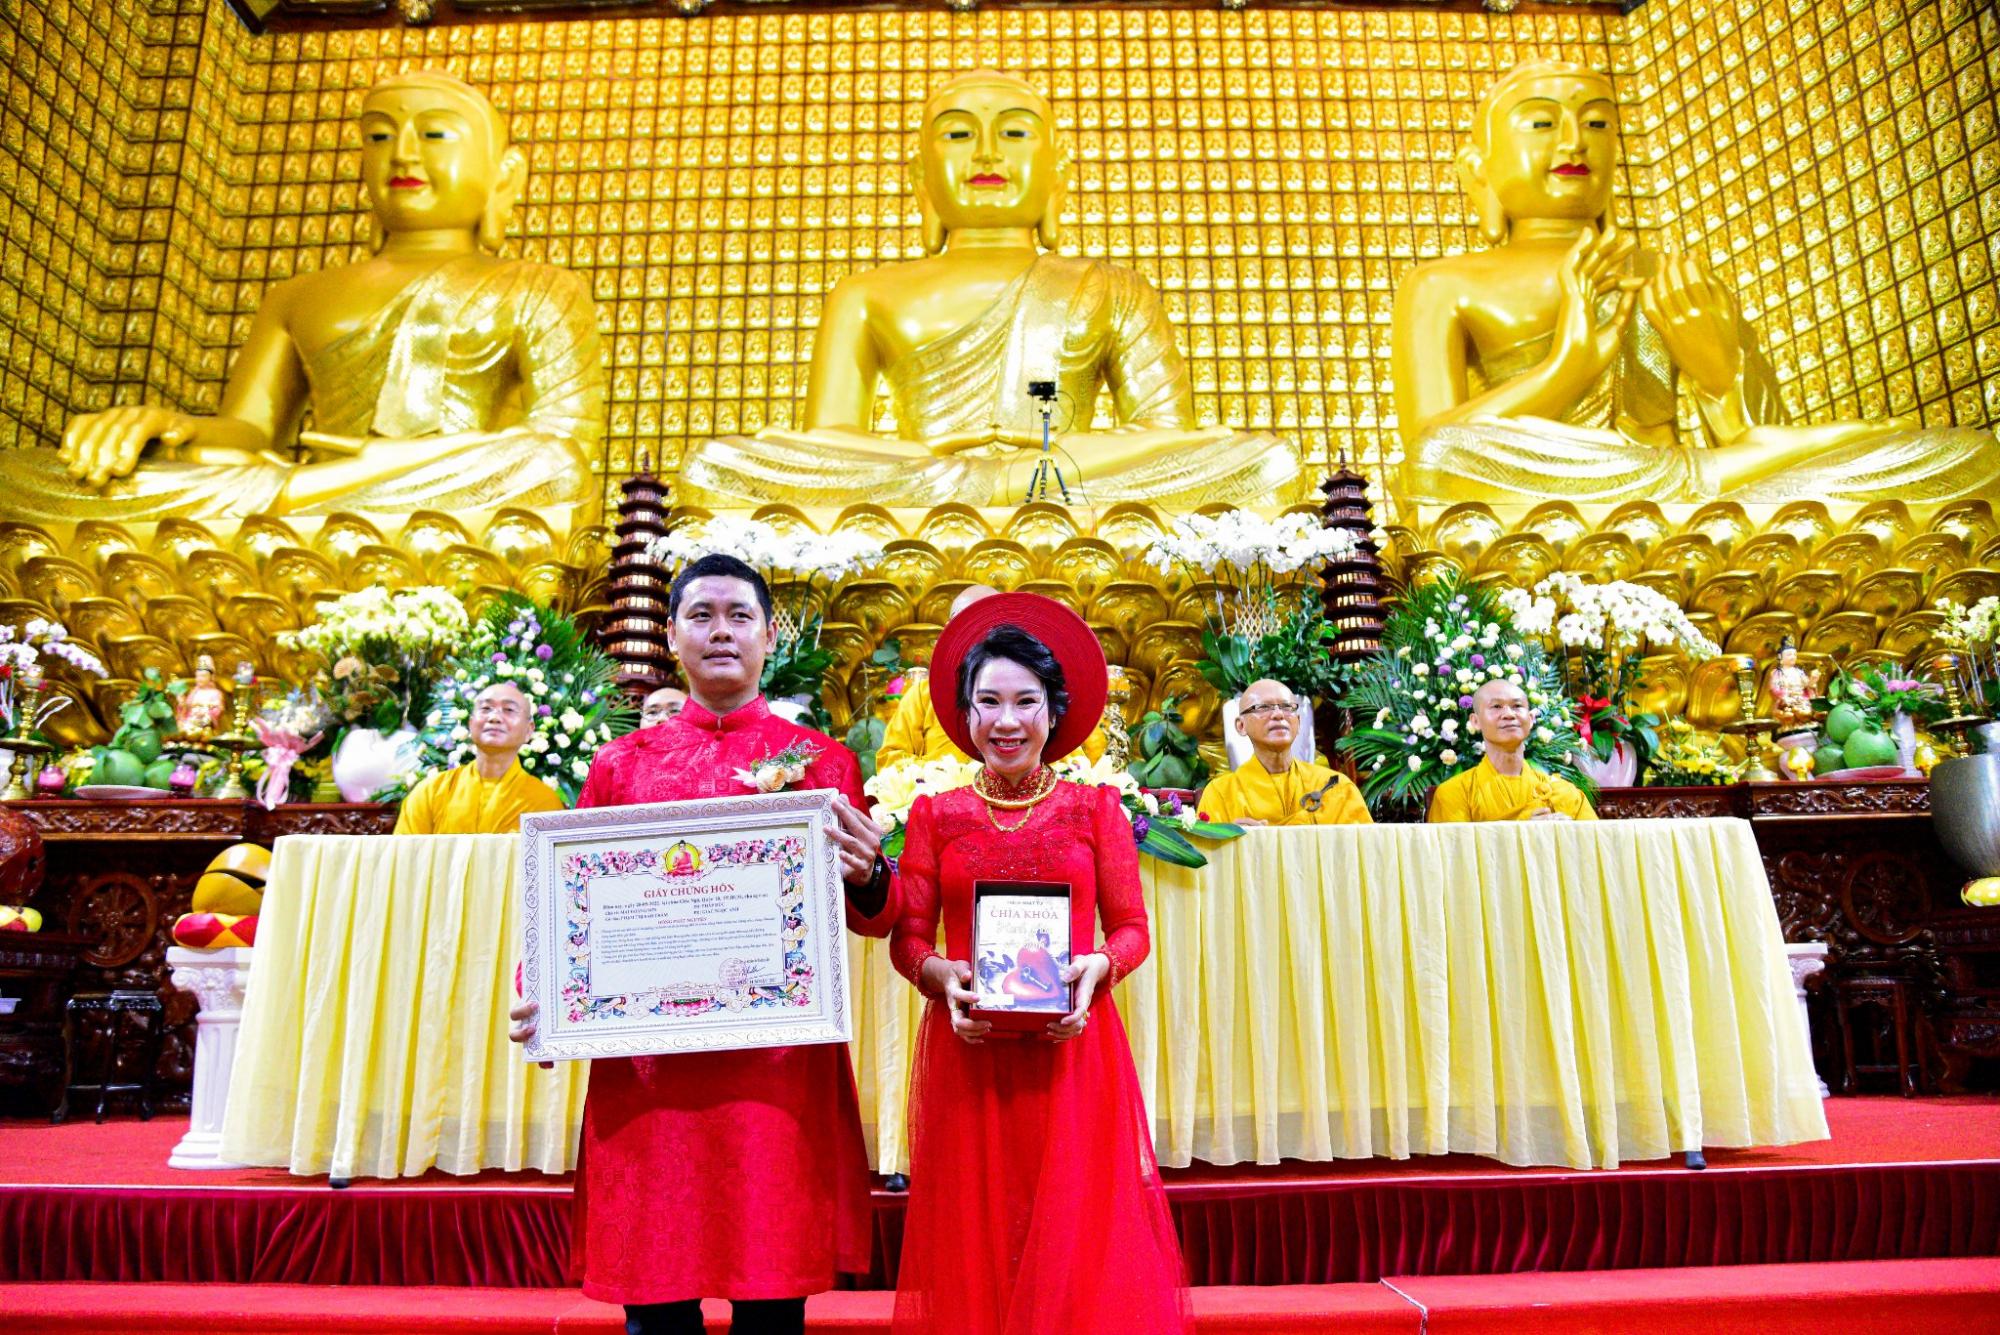 Hạnh phúc trăm năm với tình yêu trong tuệ giác nhà Phật 